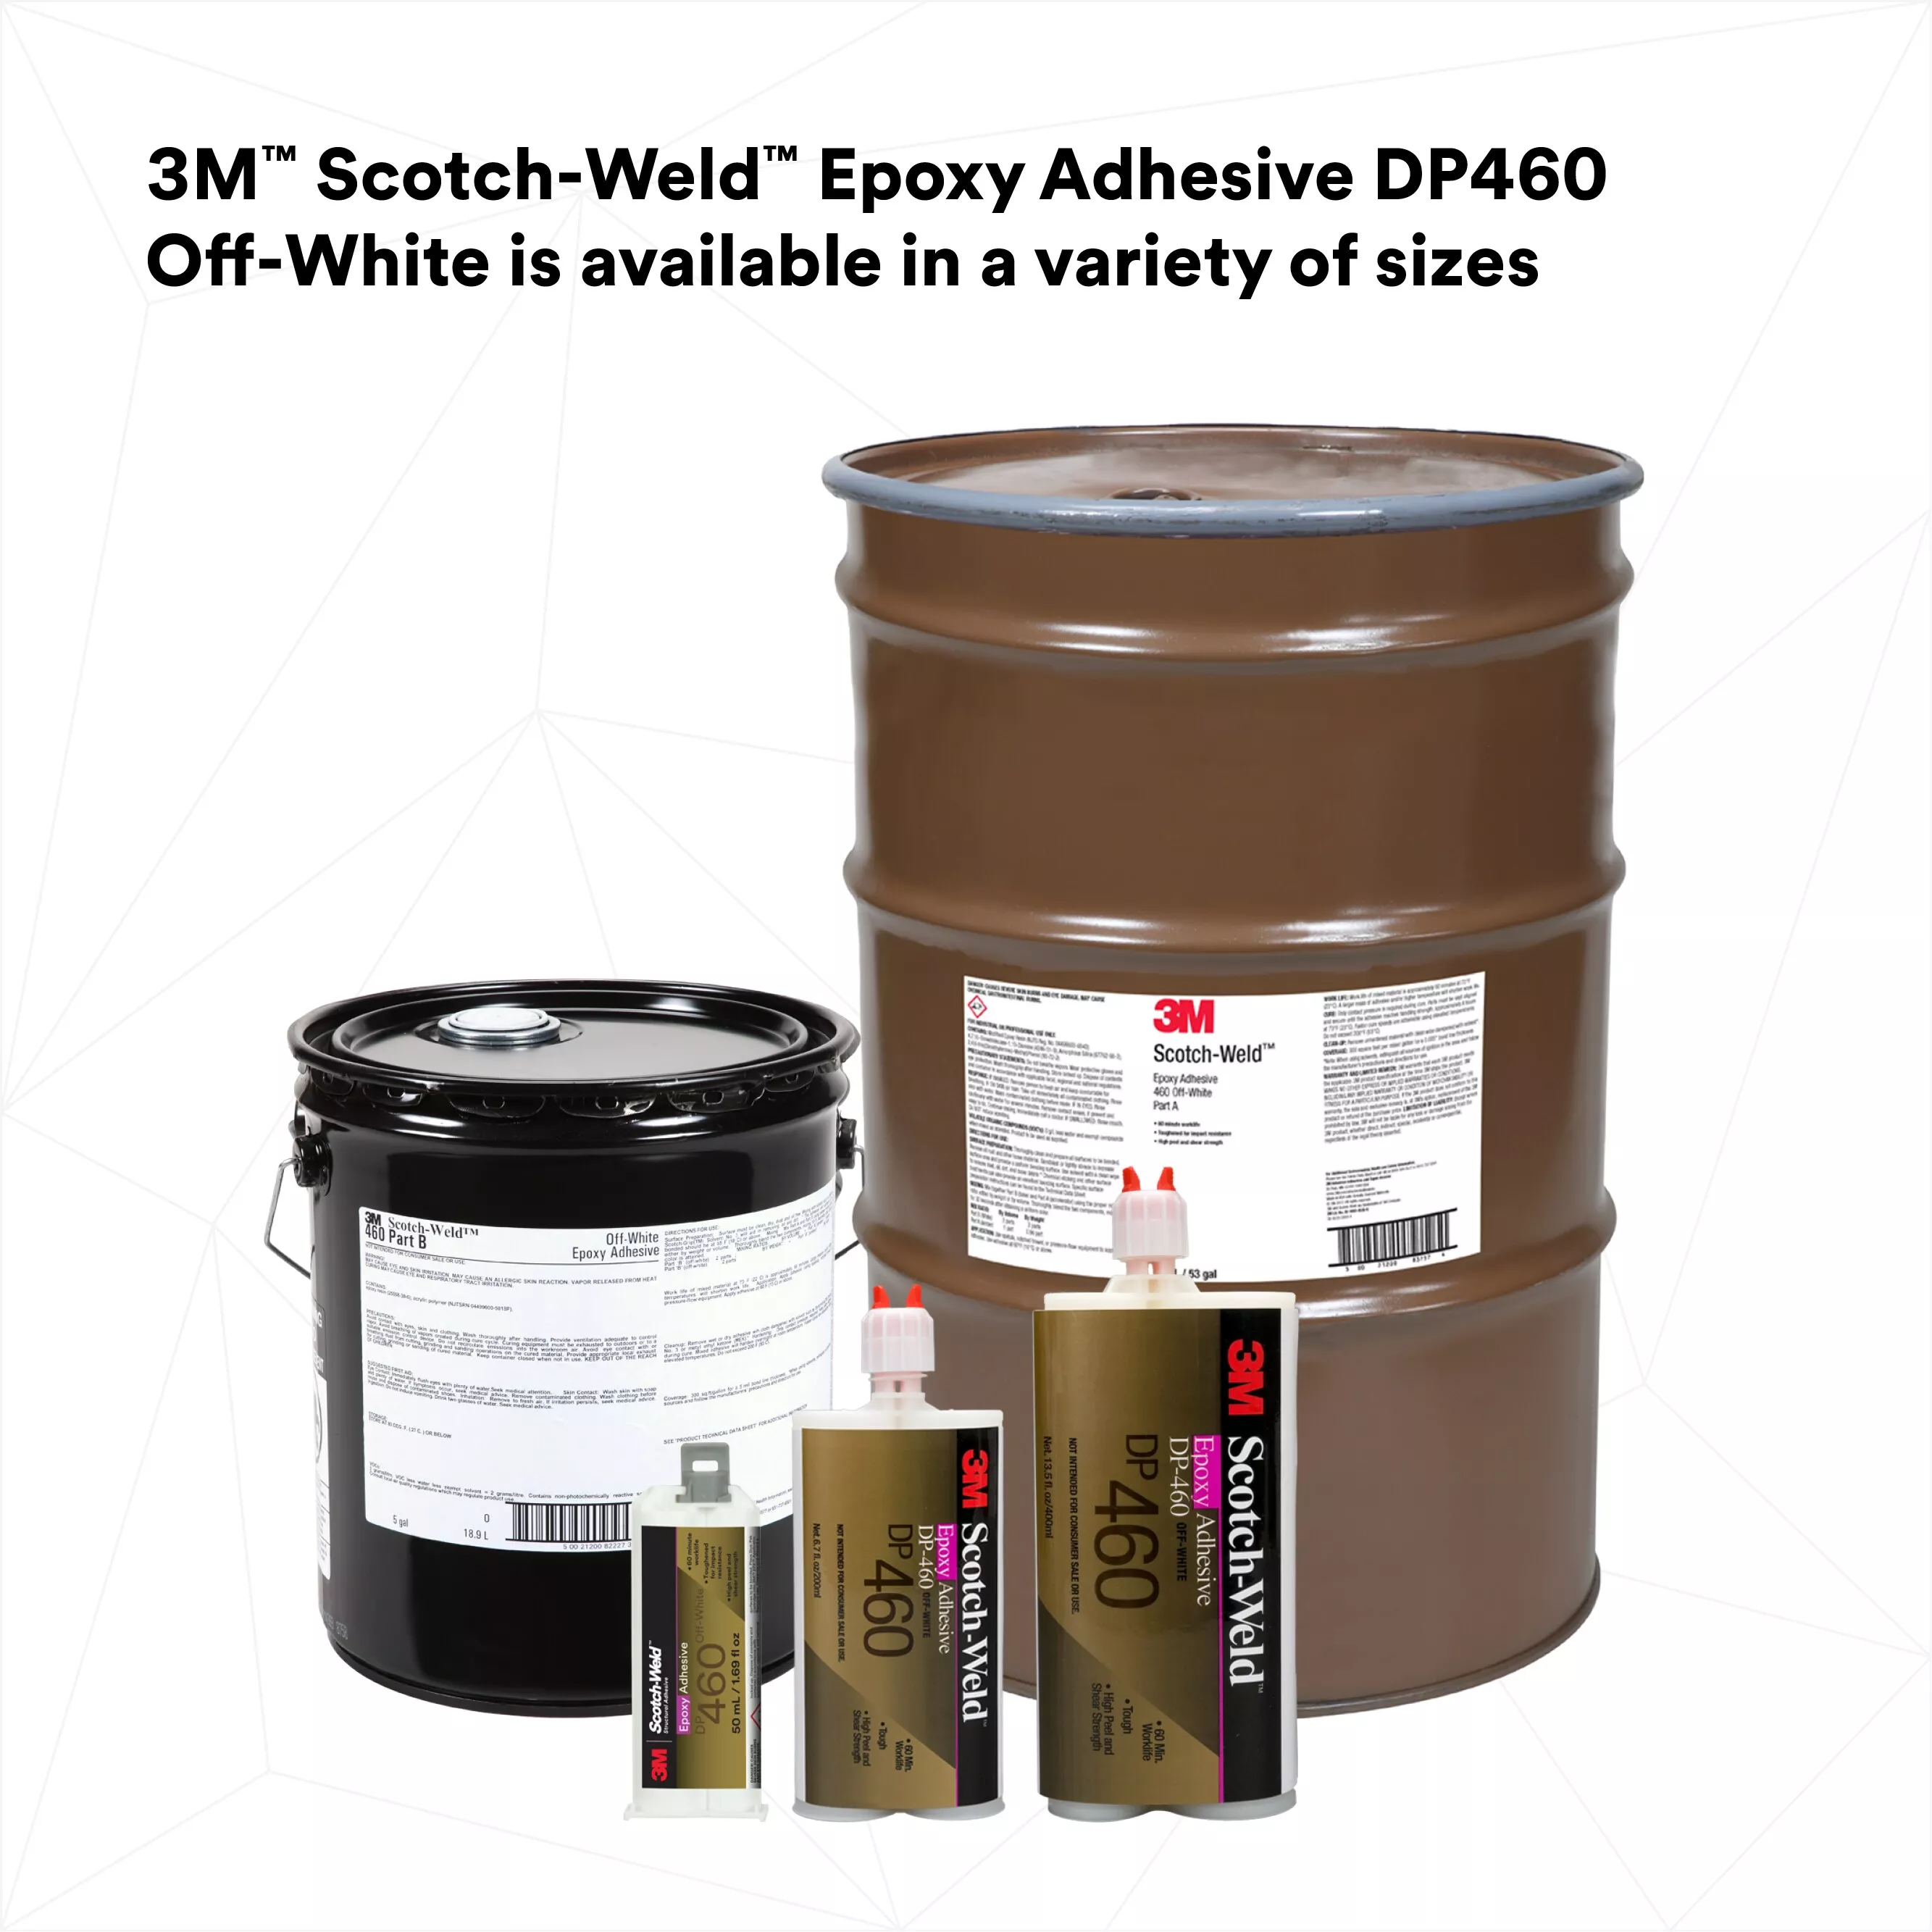 UPC 00638060089989 | 3M™ Scotch-Weld™ Epoxy Adhesive DP460